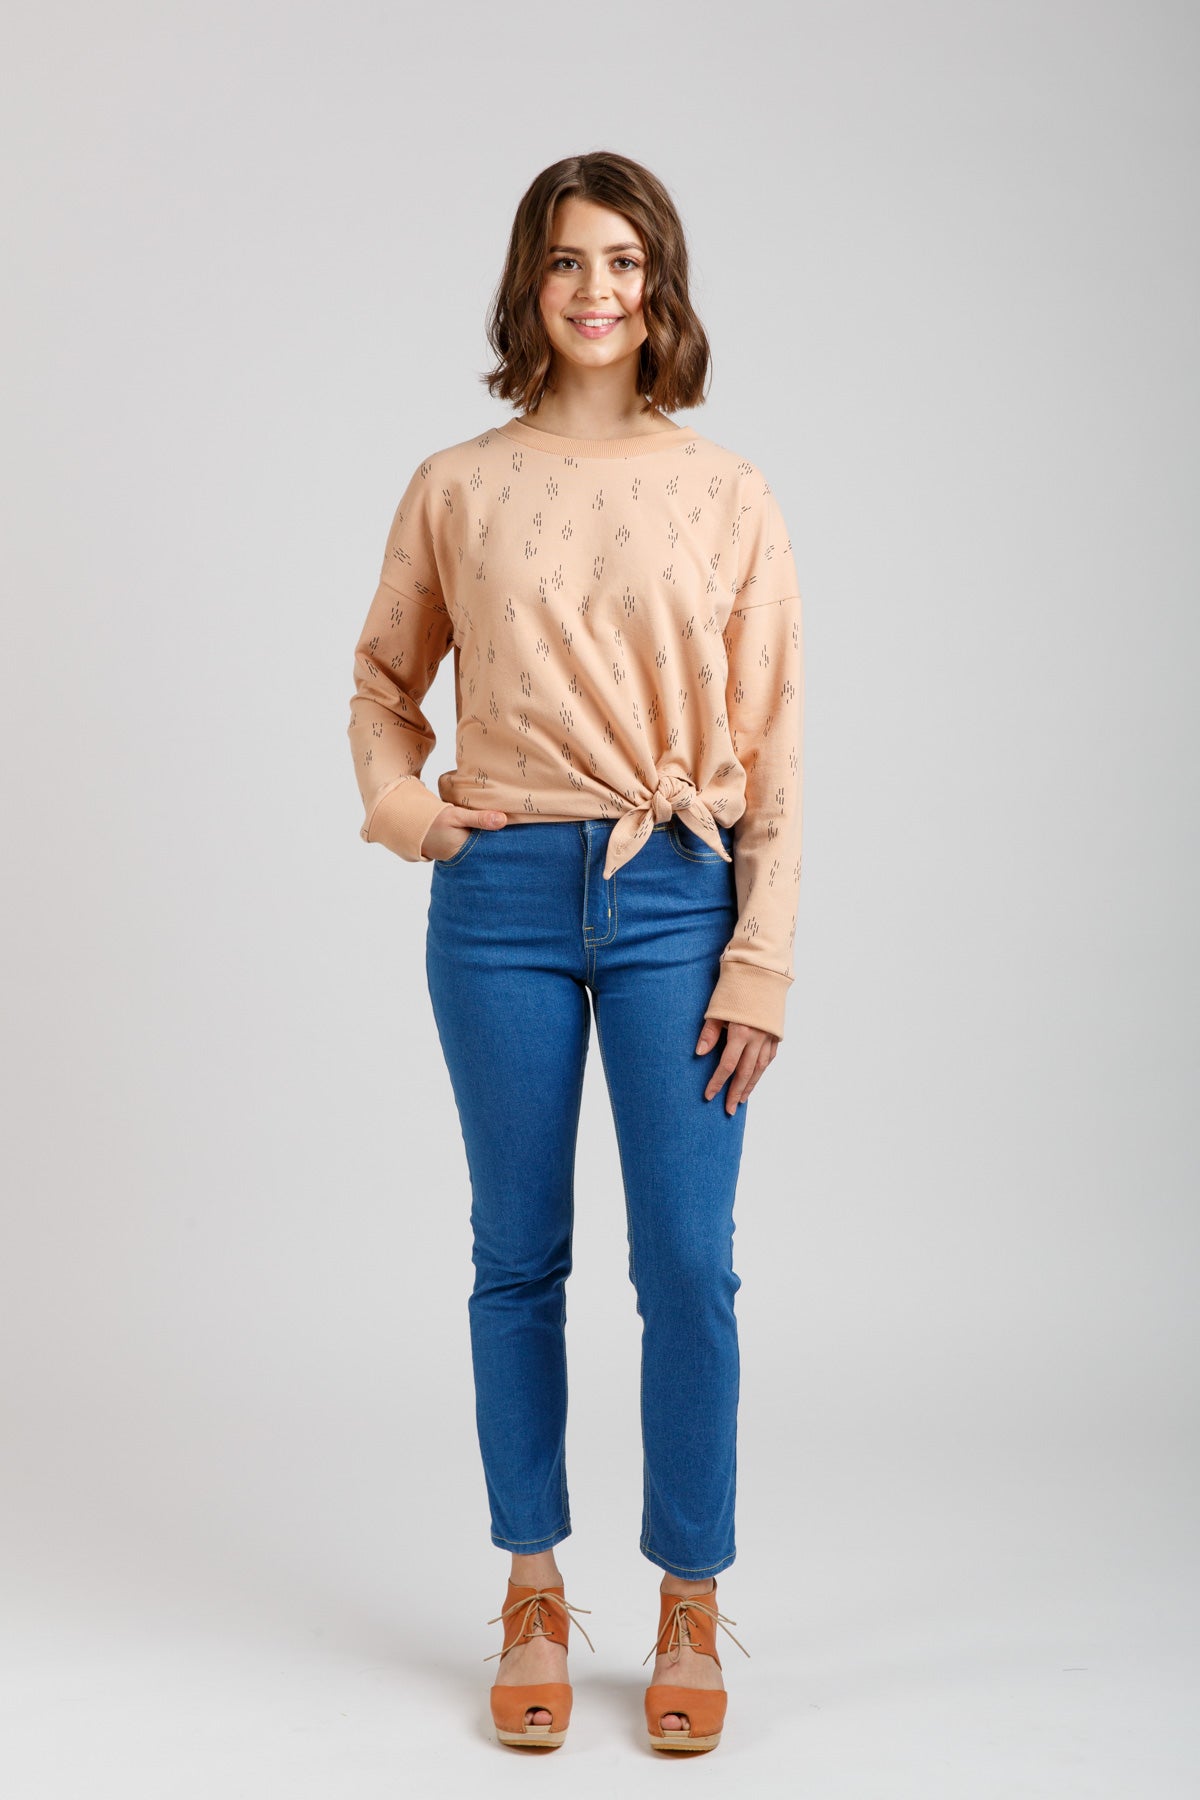 Jarrah Sweater | Megan Nielsen - MaaiDesign